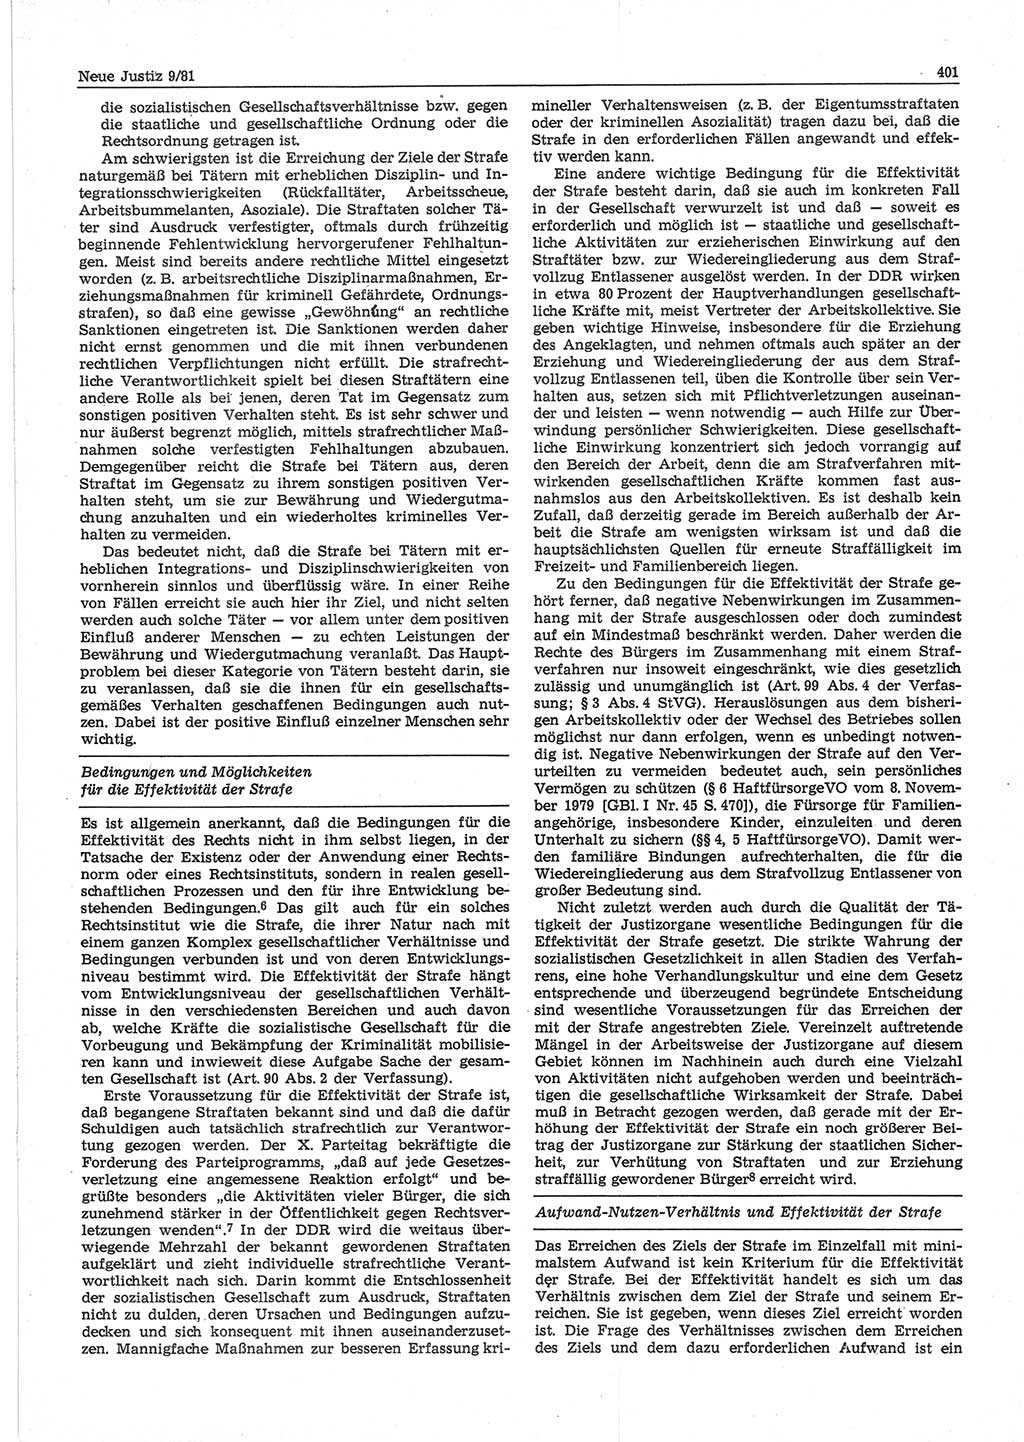 Neue Justiz (NJ), Zeitschrift für sozialistisches Recht und Gesetzlichkeit [Deutsche Demokratische Republik (DDR)], 35. Jahrgang 1981, Seite 401 (NJ DDR 1981, S. 401)